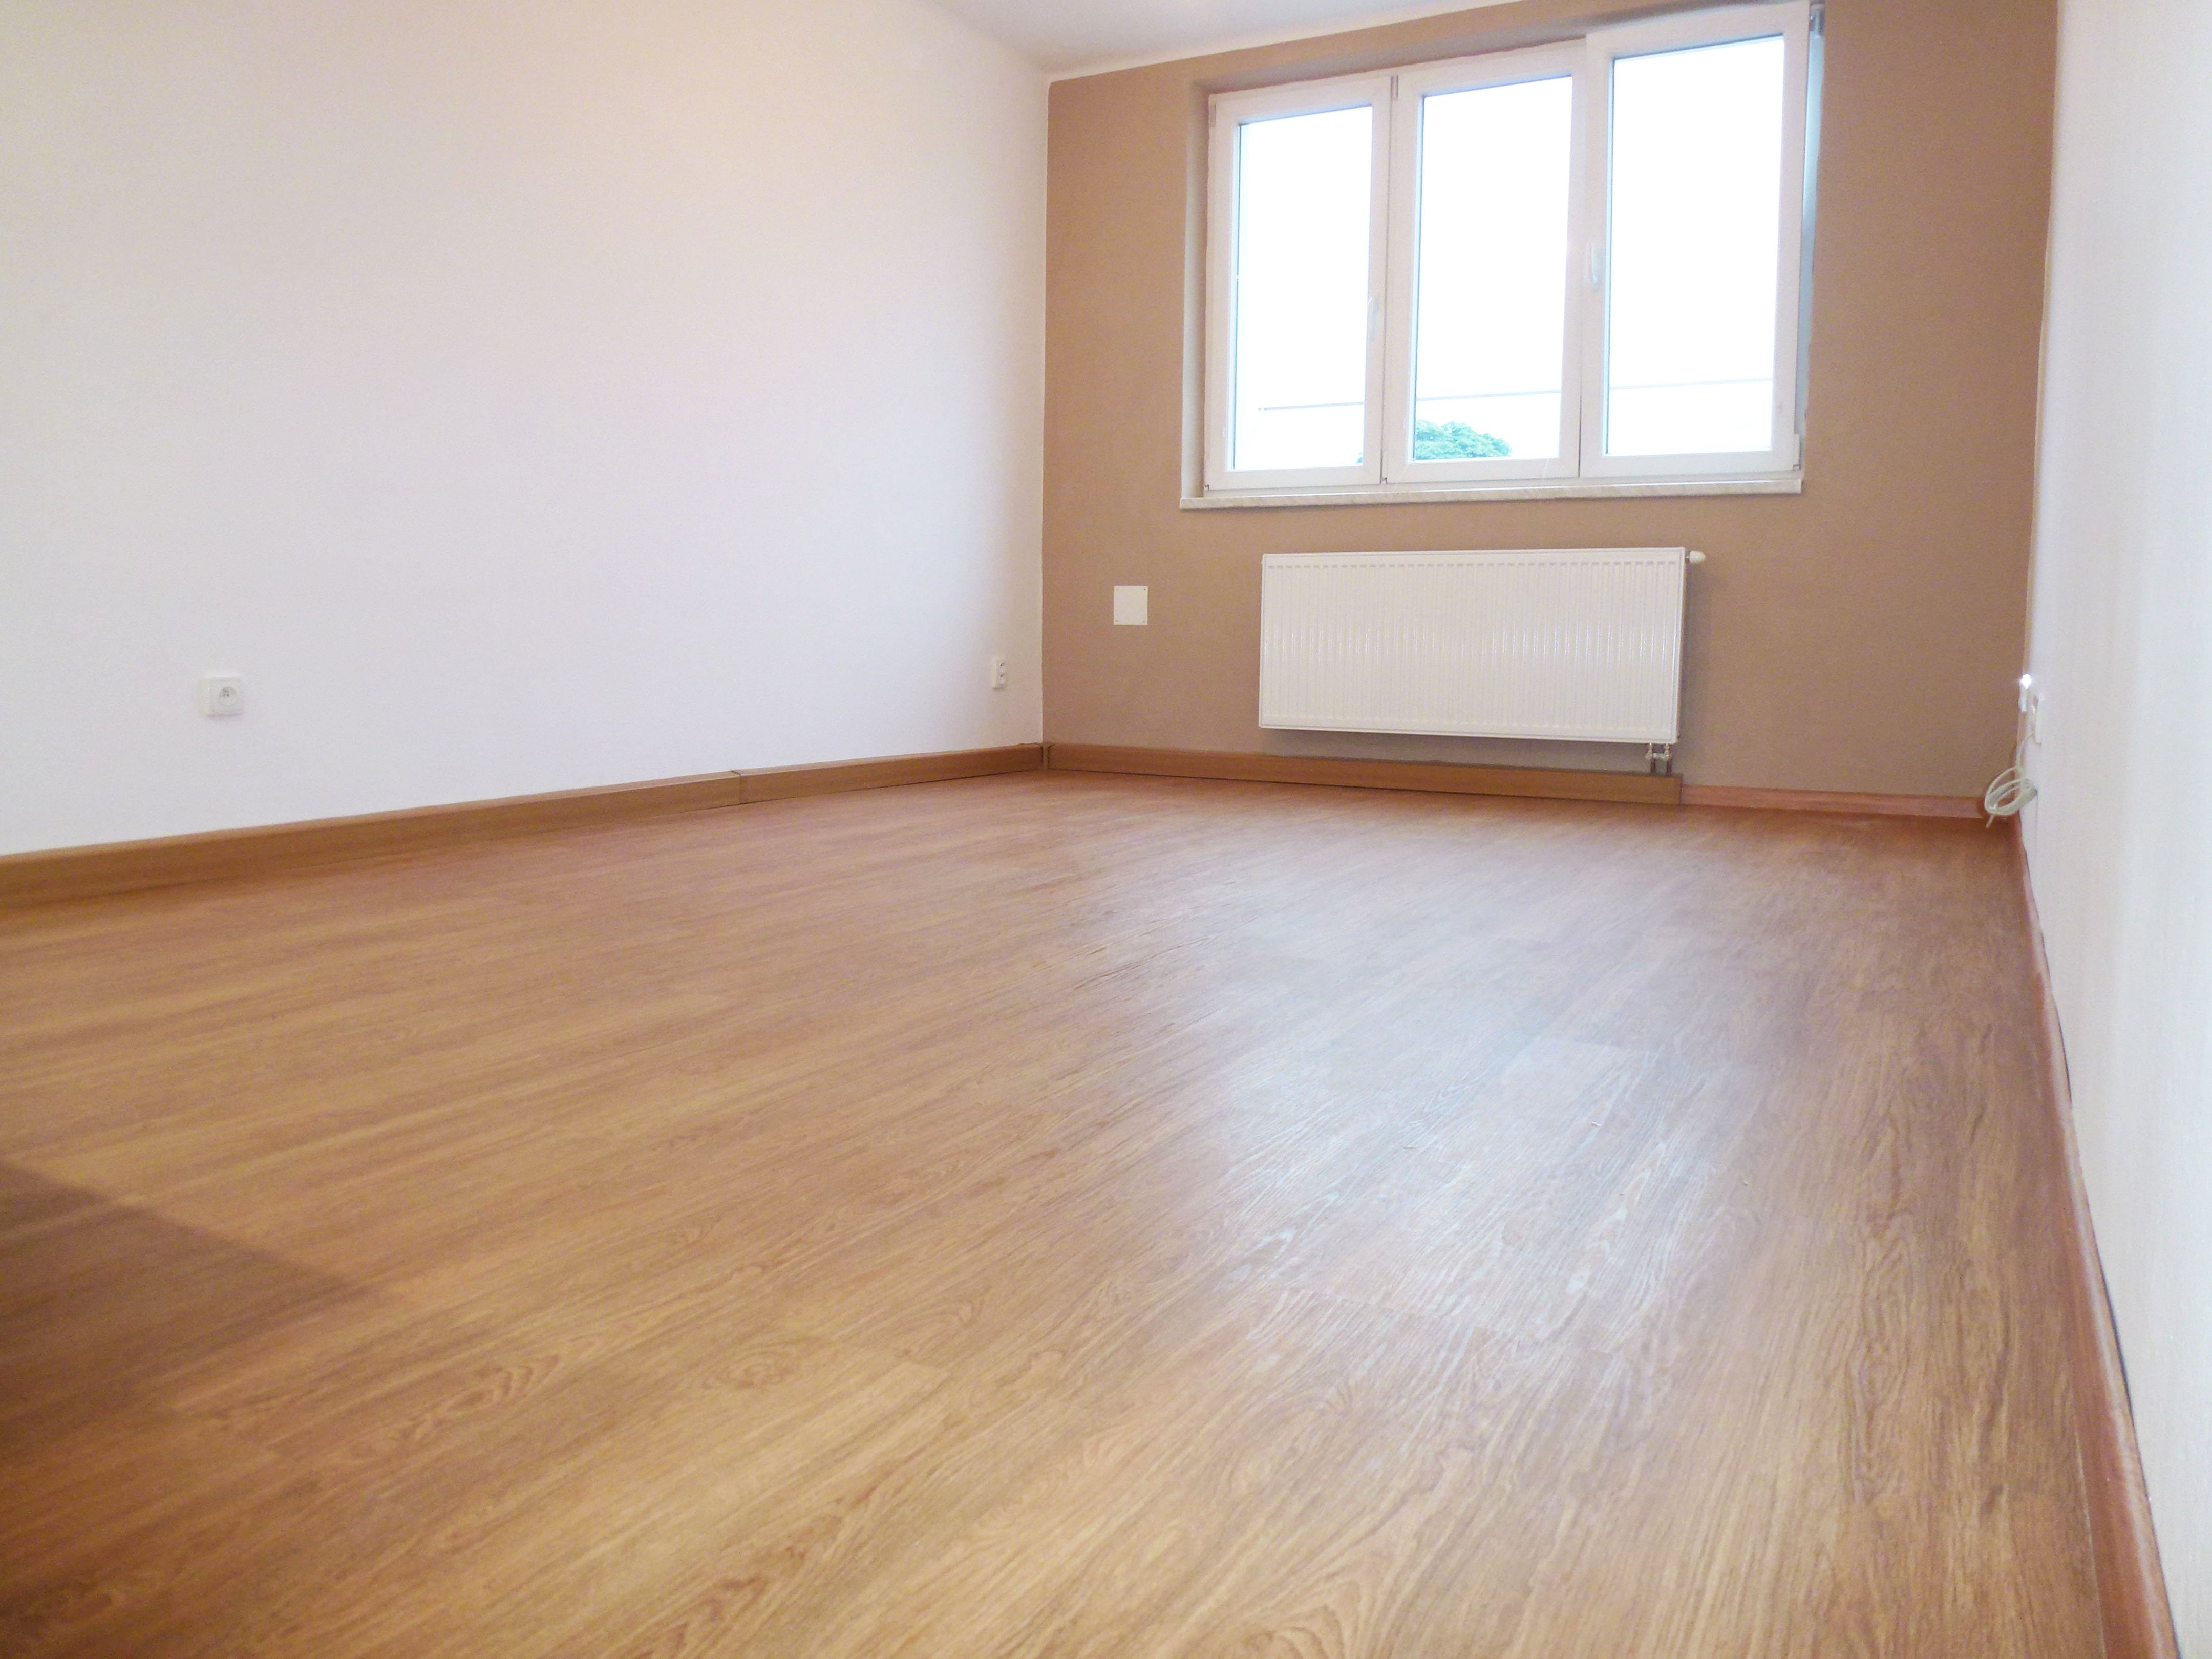 Kávovou barvu jsme zopakovali v obývací části a tím jsme prostor propojili_rekonstrukce bytu 2+kk | Koupelny-svitavy.cz